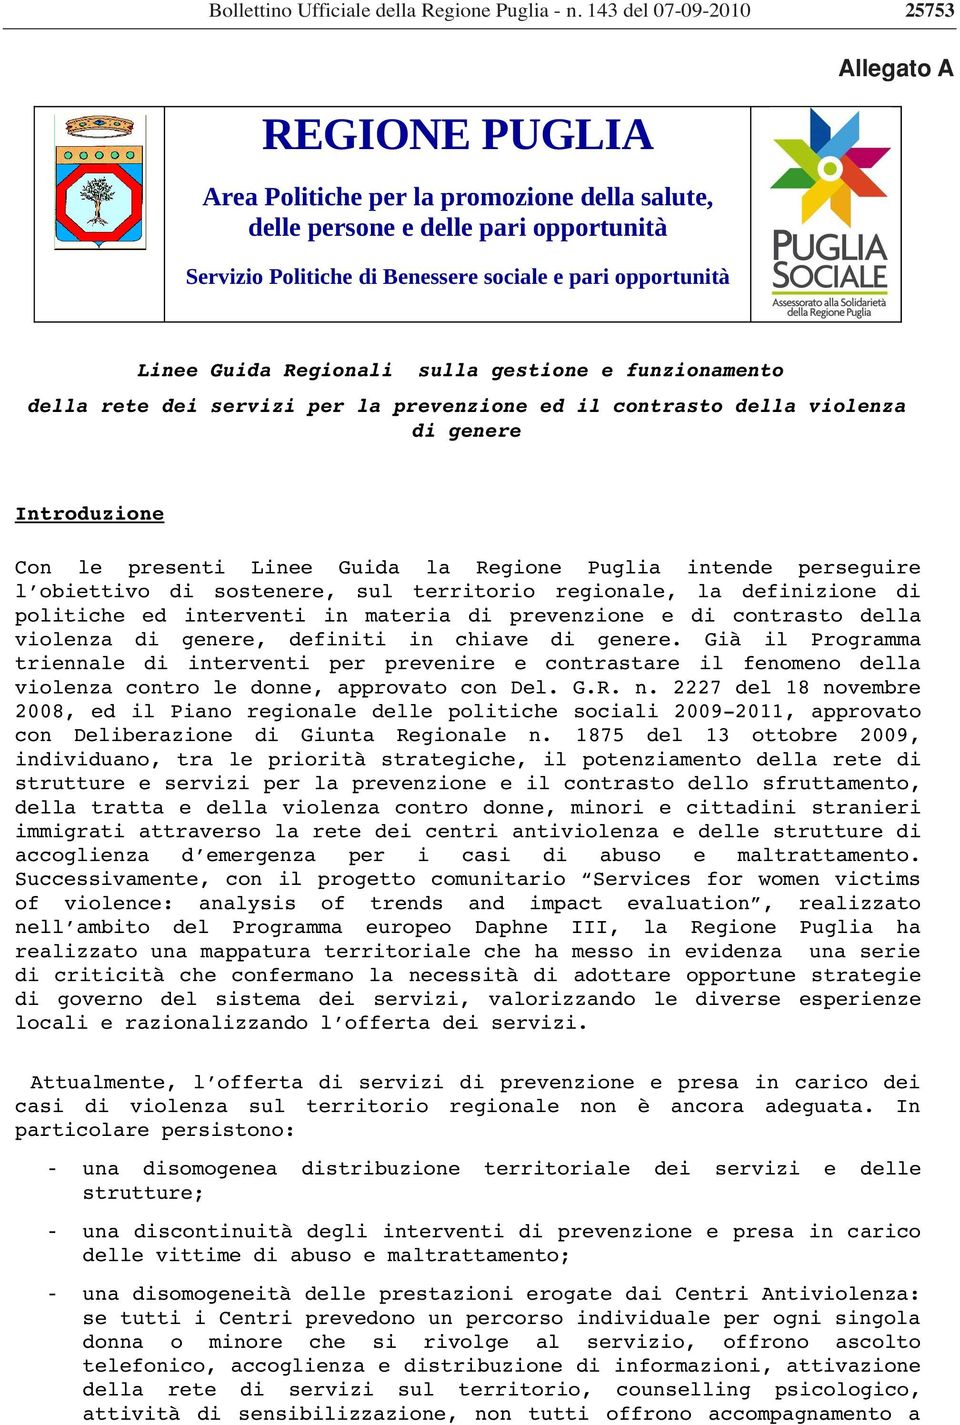 presenti Linee Guida la Regione Puglia intende perseguire l obiettivo di sostenere, sul territorio regionale, la definizione di politiche ed interventi in materia di prevenzione e di contrasto della